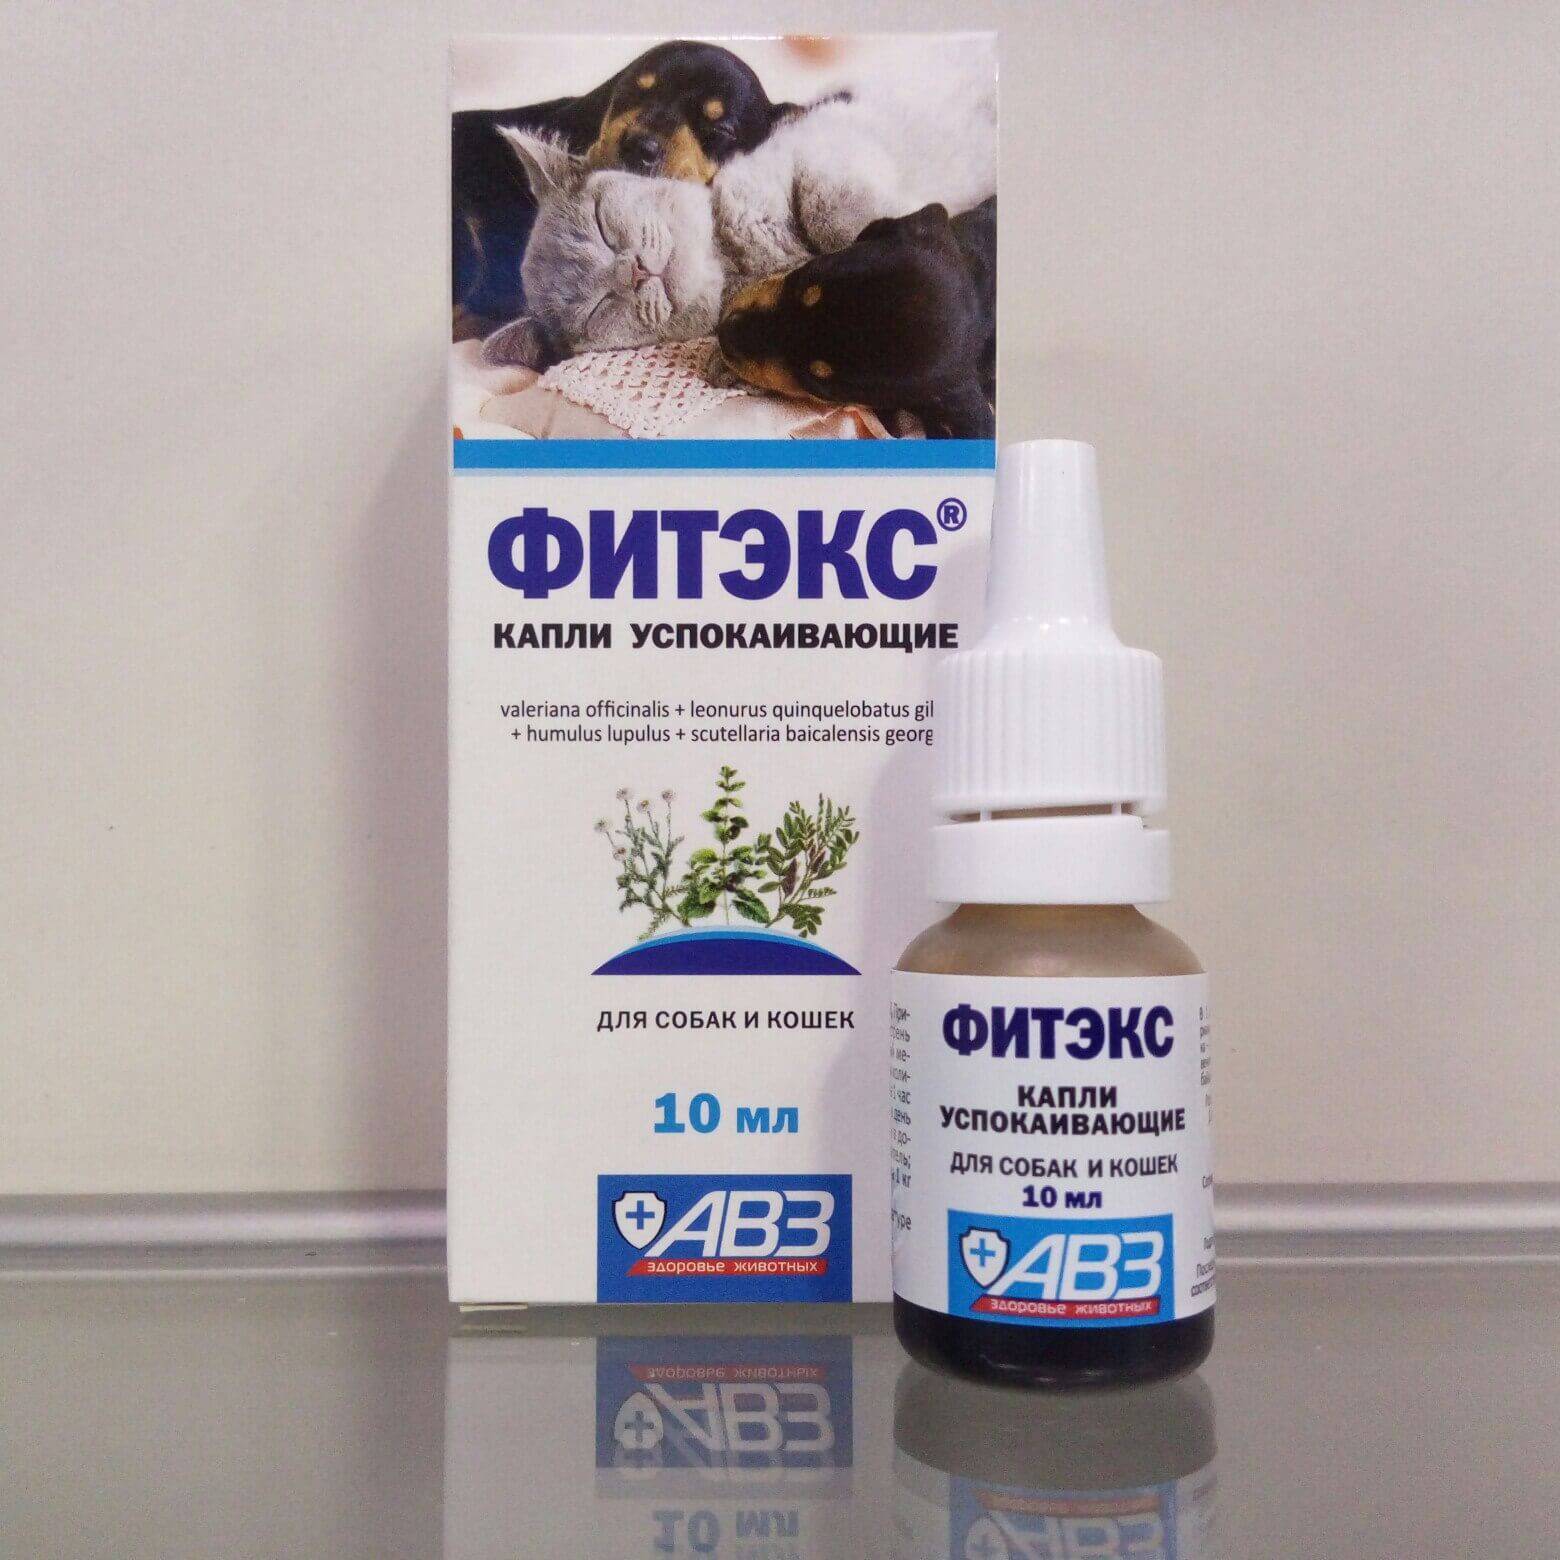 Успокоительные средства для кошек: седативные препараты, их применение, противопоказания, когда лучше обойтись без них